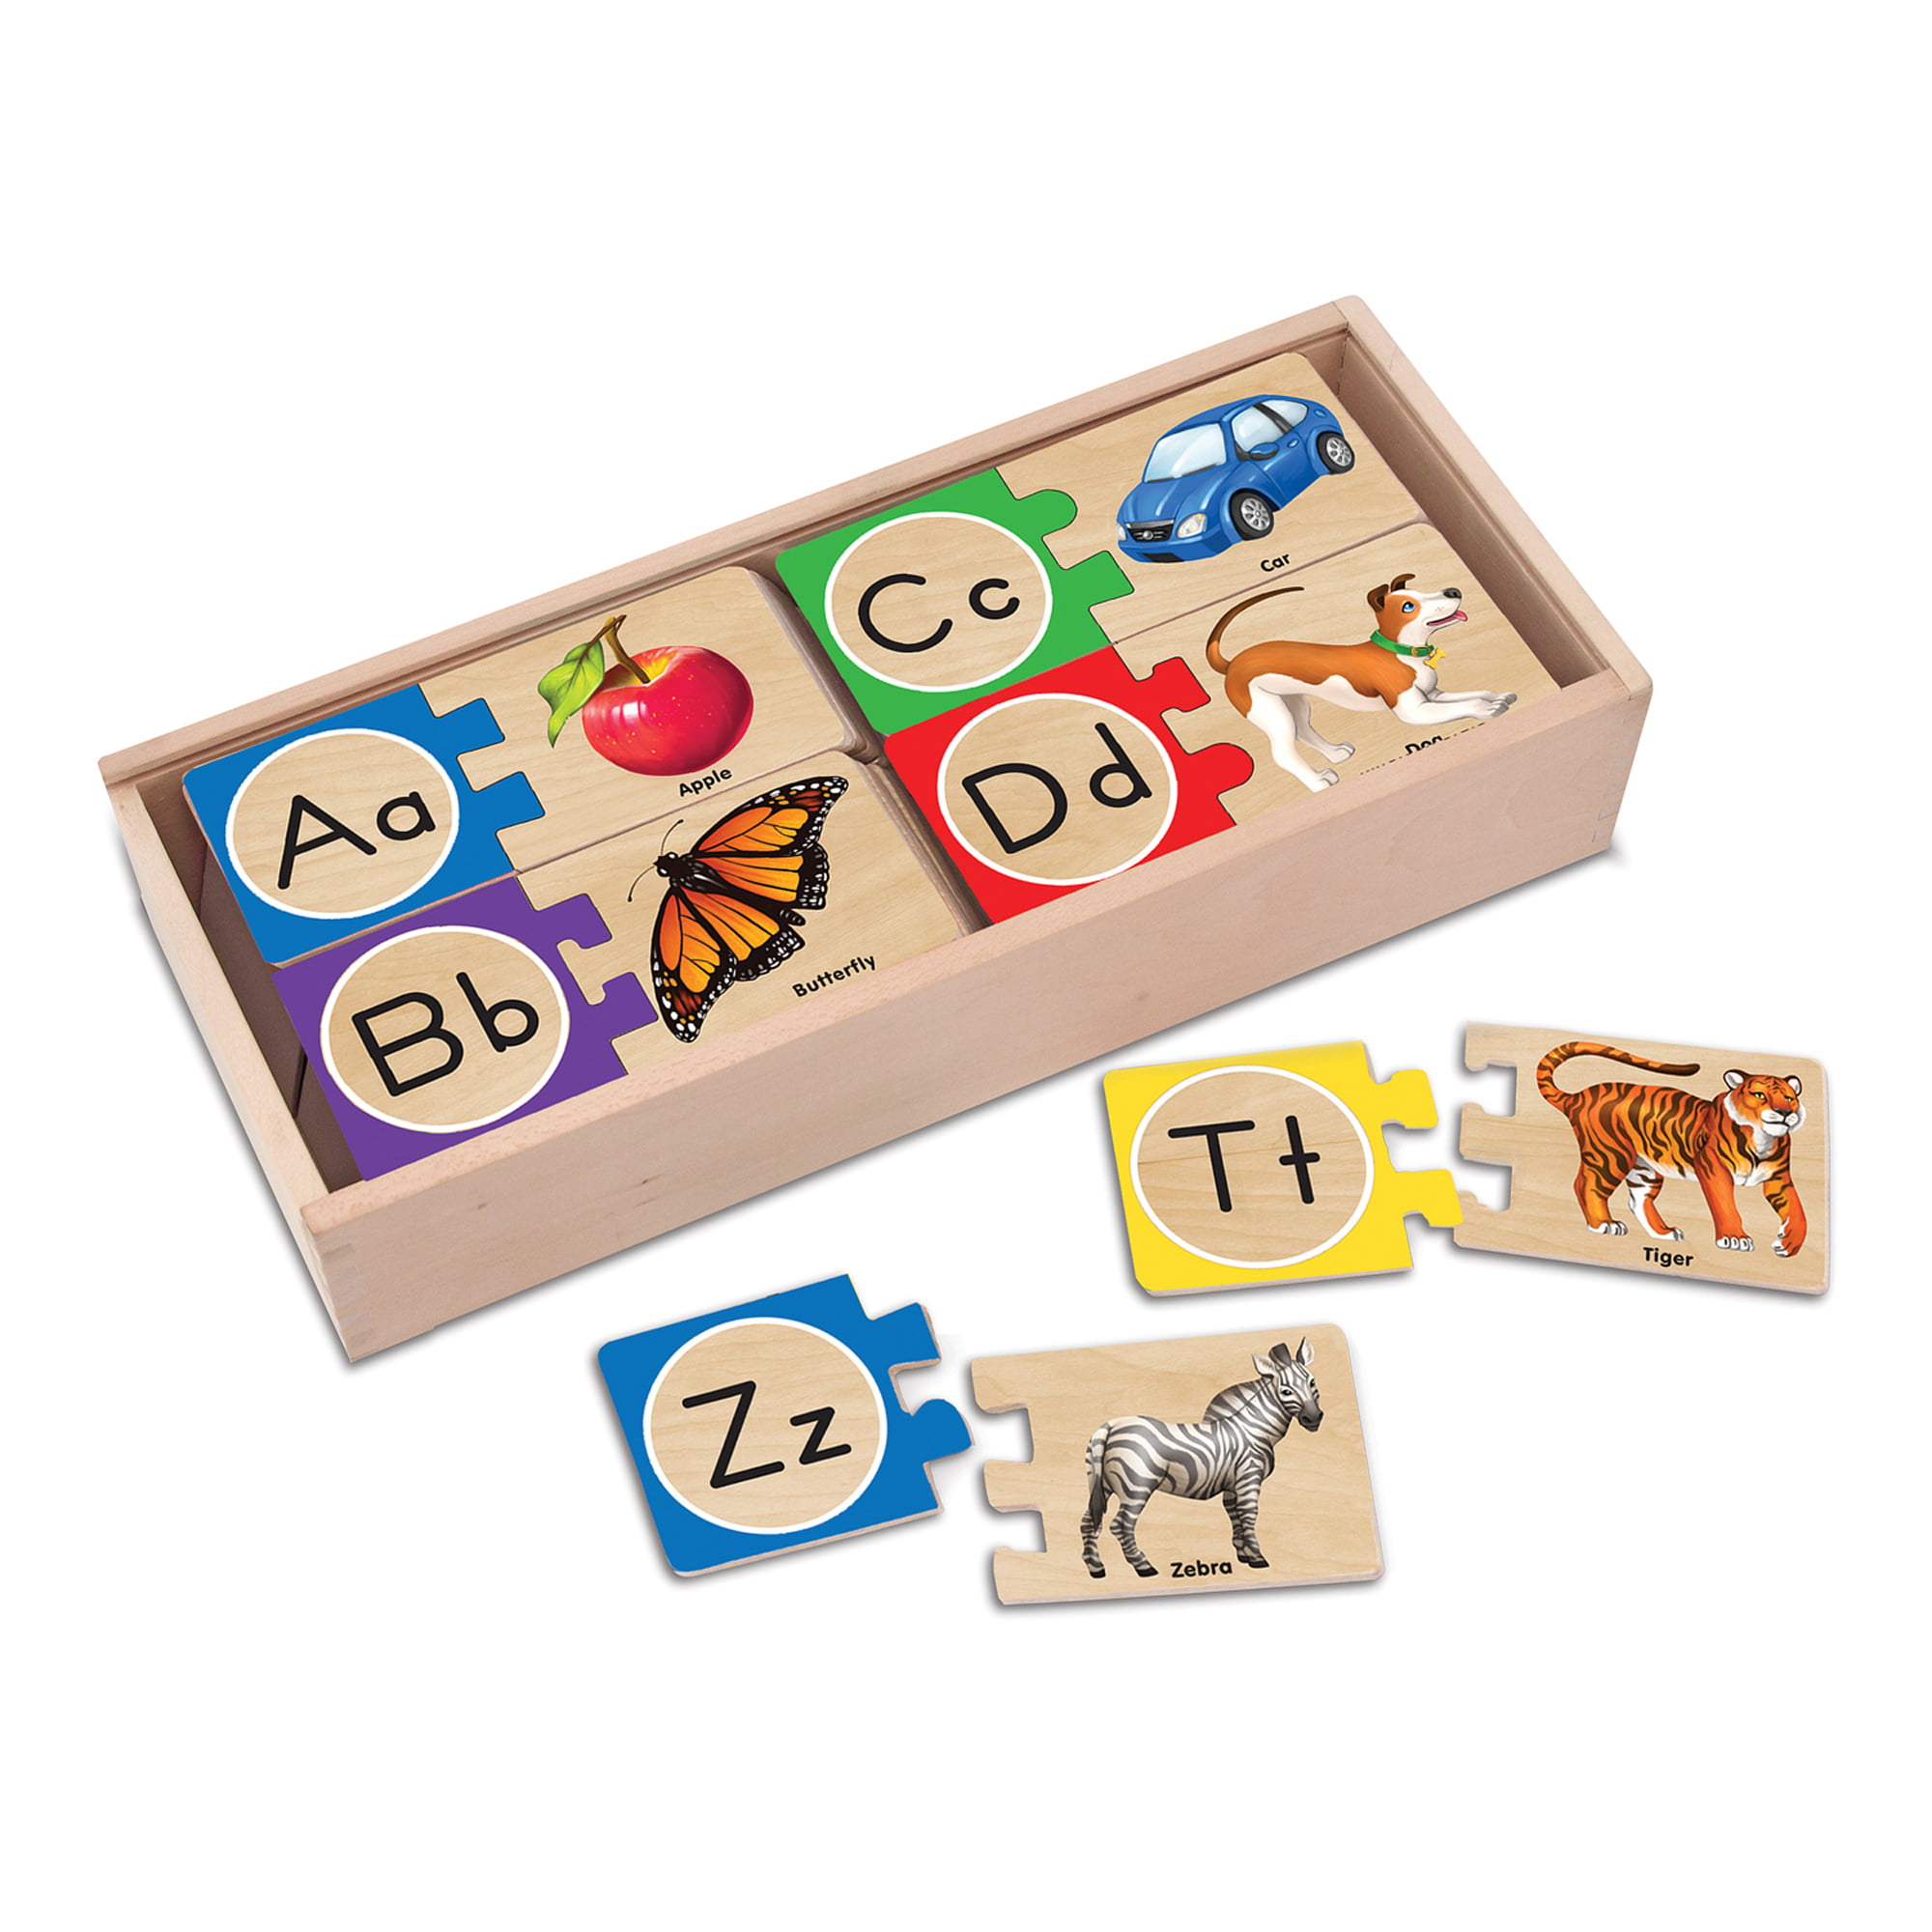 Melissa & Doug Alphabet ABC Wooden Sound Puzzle Z2 for sale online 